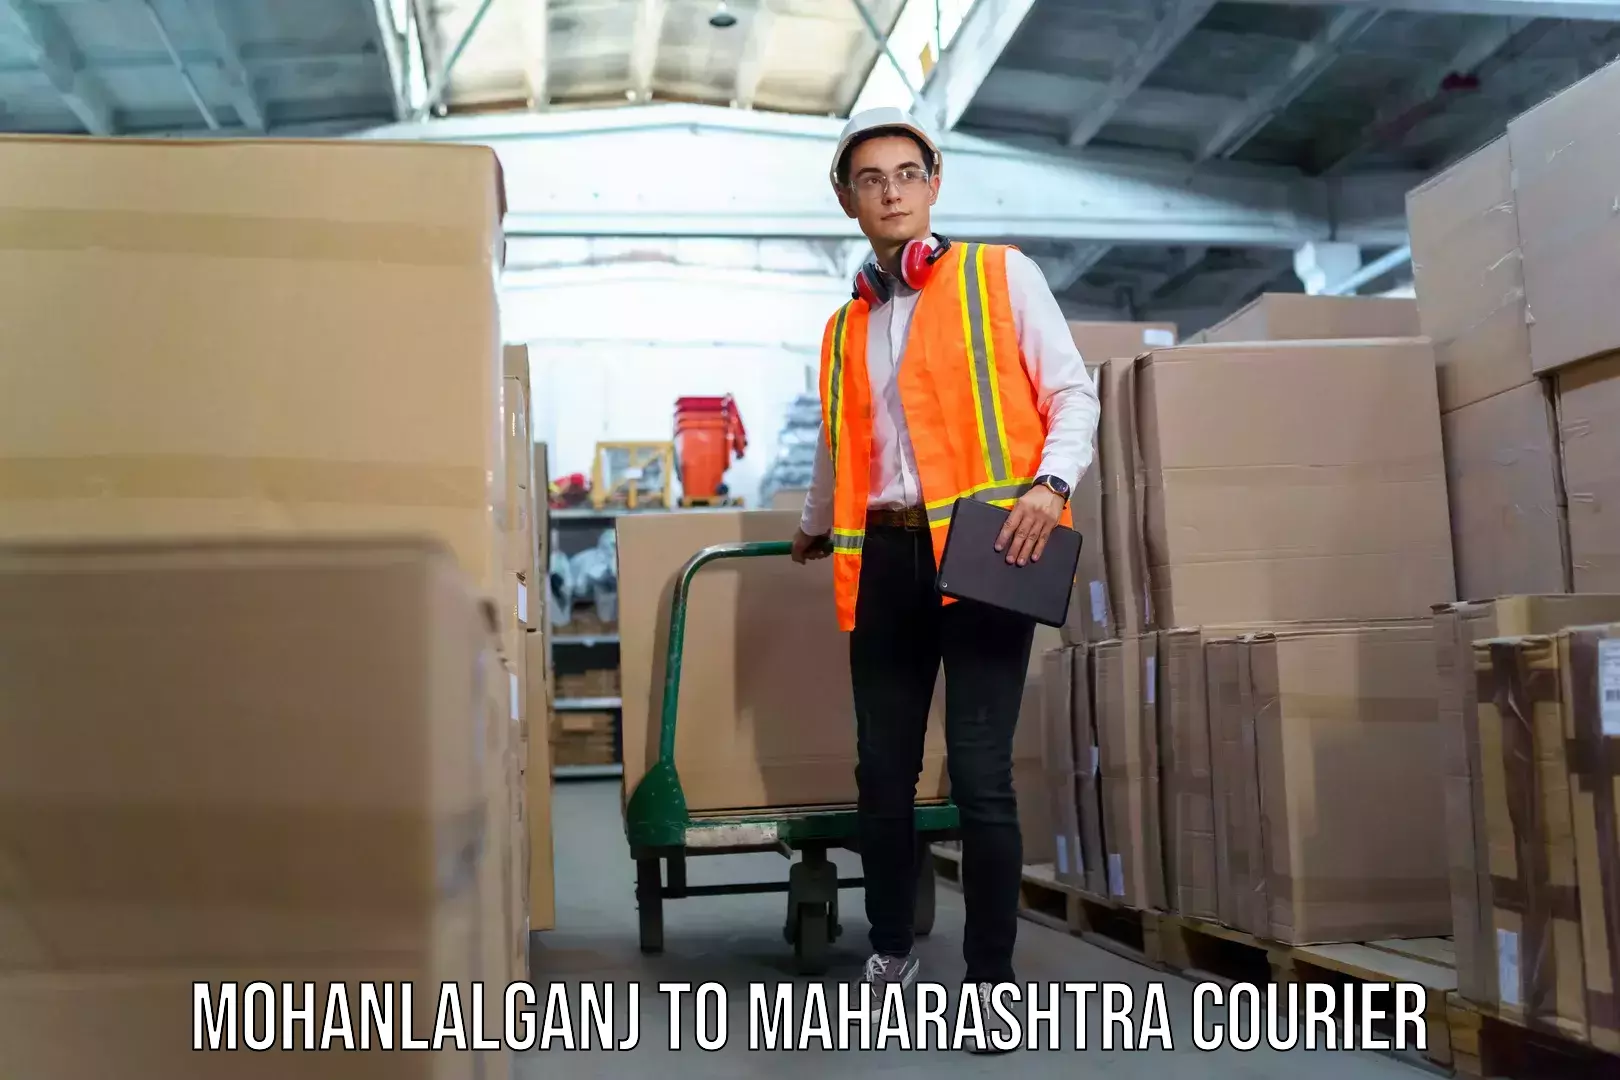 Baggage courier FAQs Mohanlalganj to Maharashtra